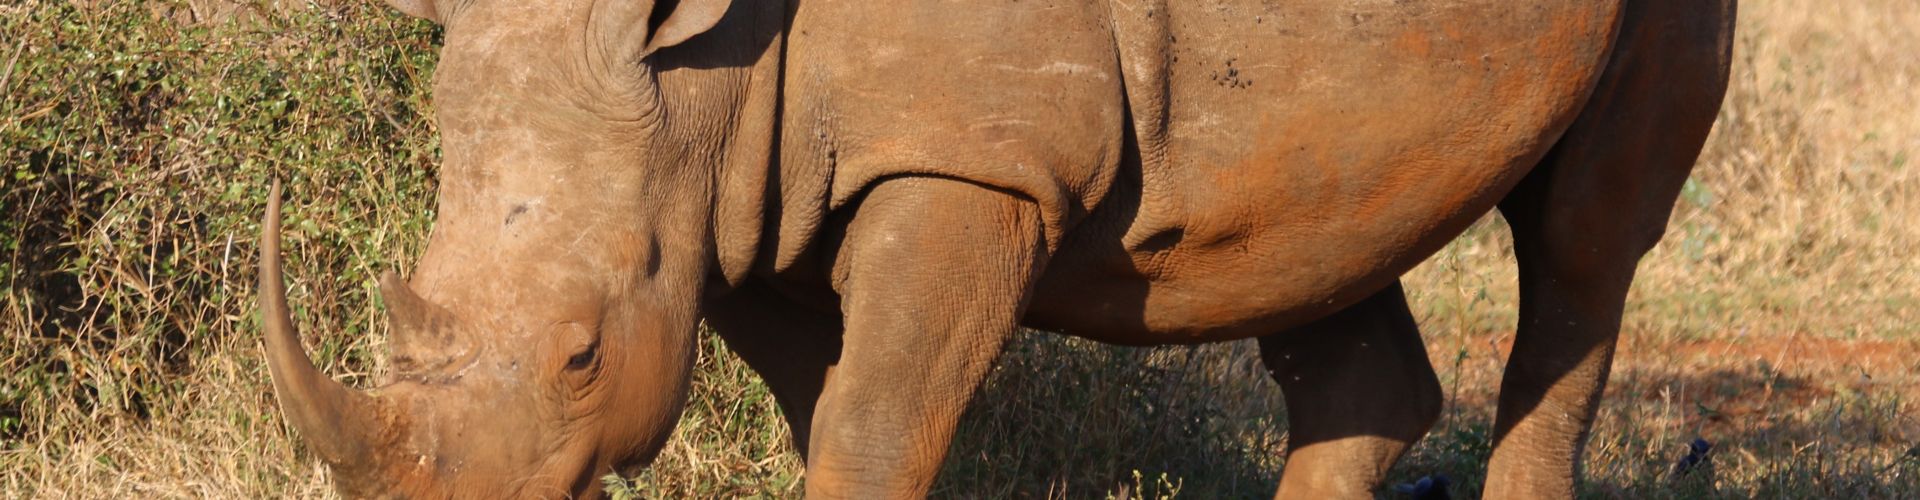 Eine Nahaufnahme eines Nashorns, einer der am stärksten gefährdeten Tierarten der Welt